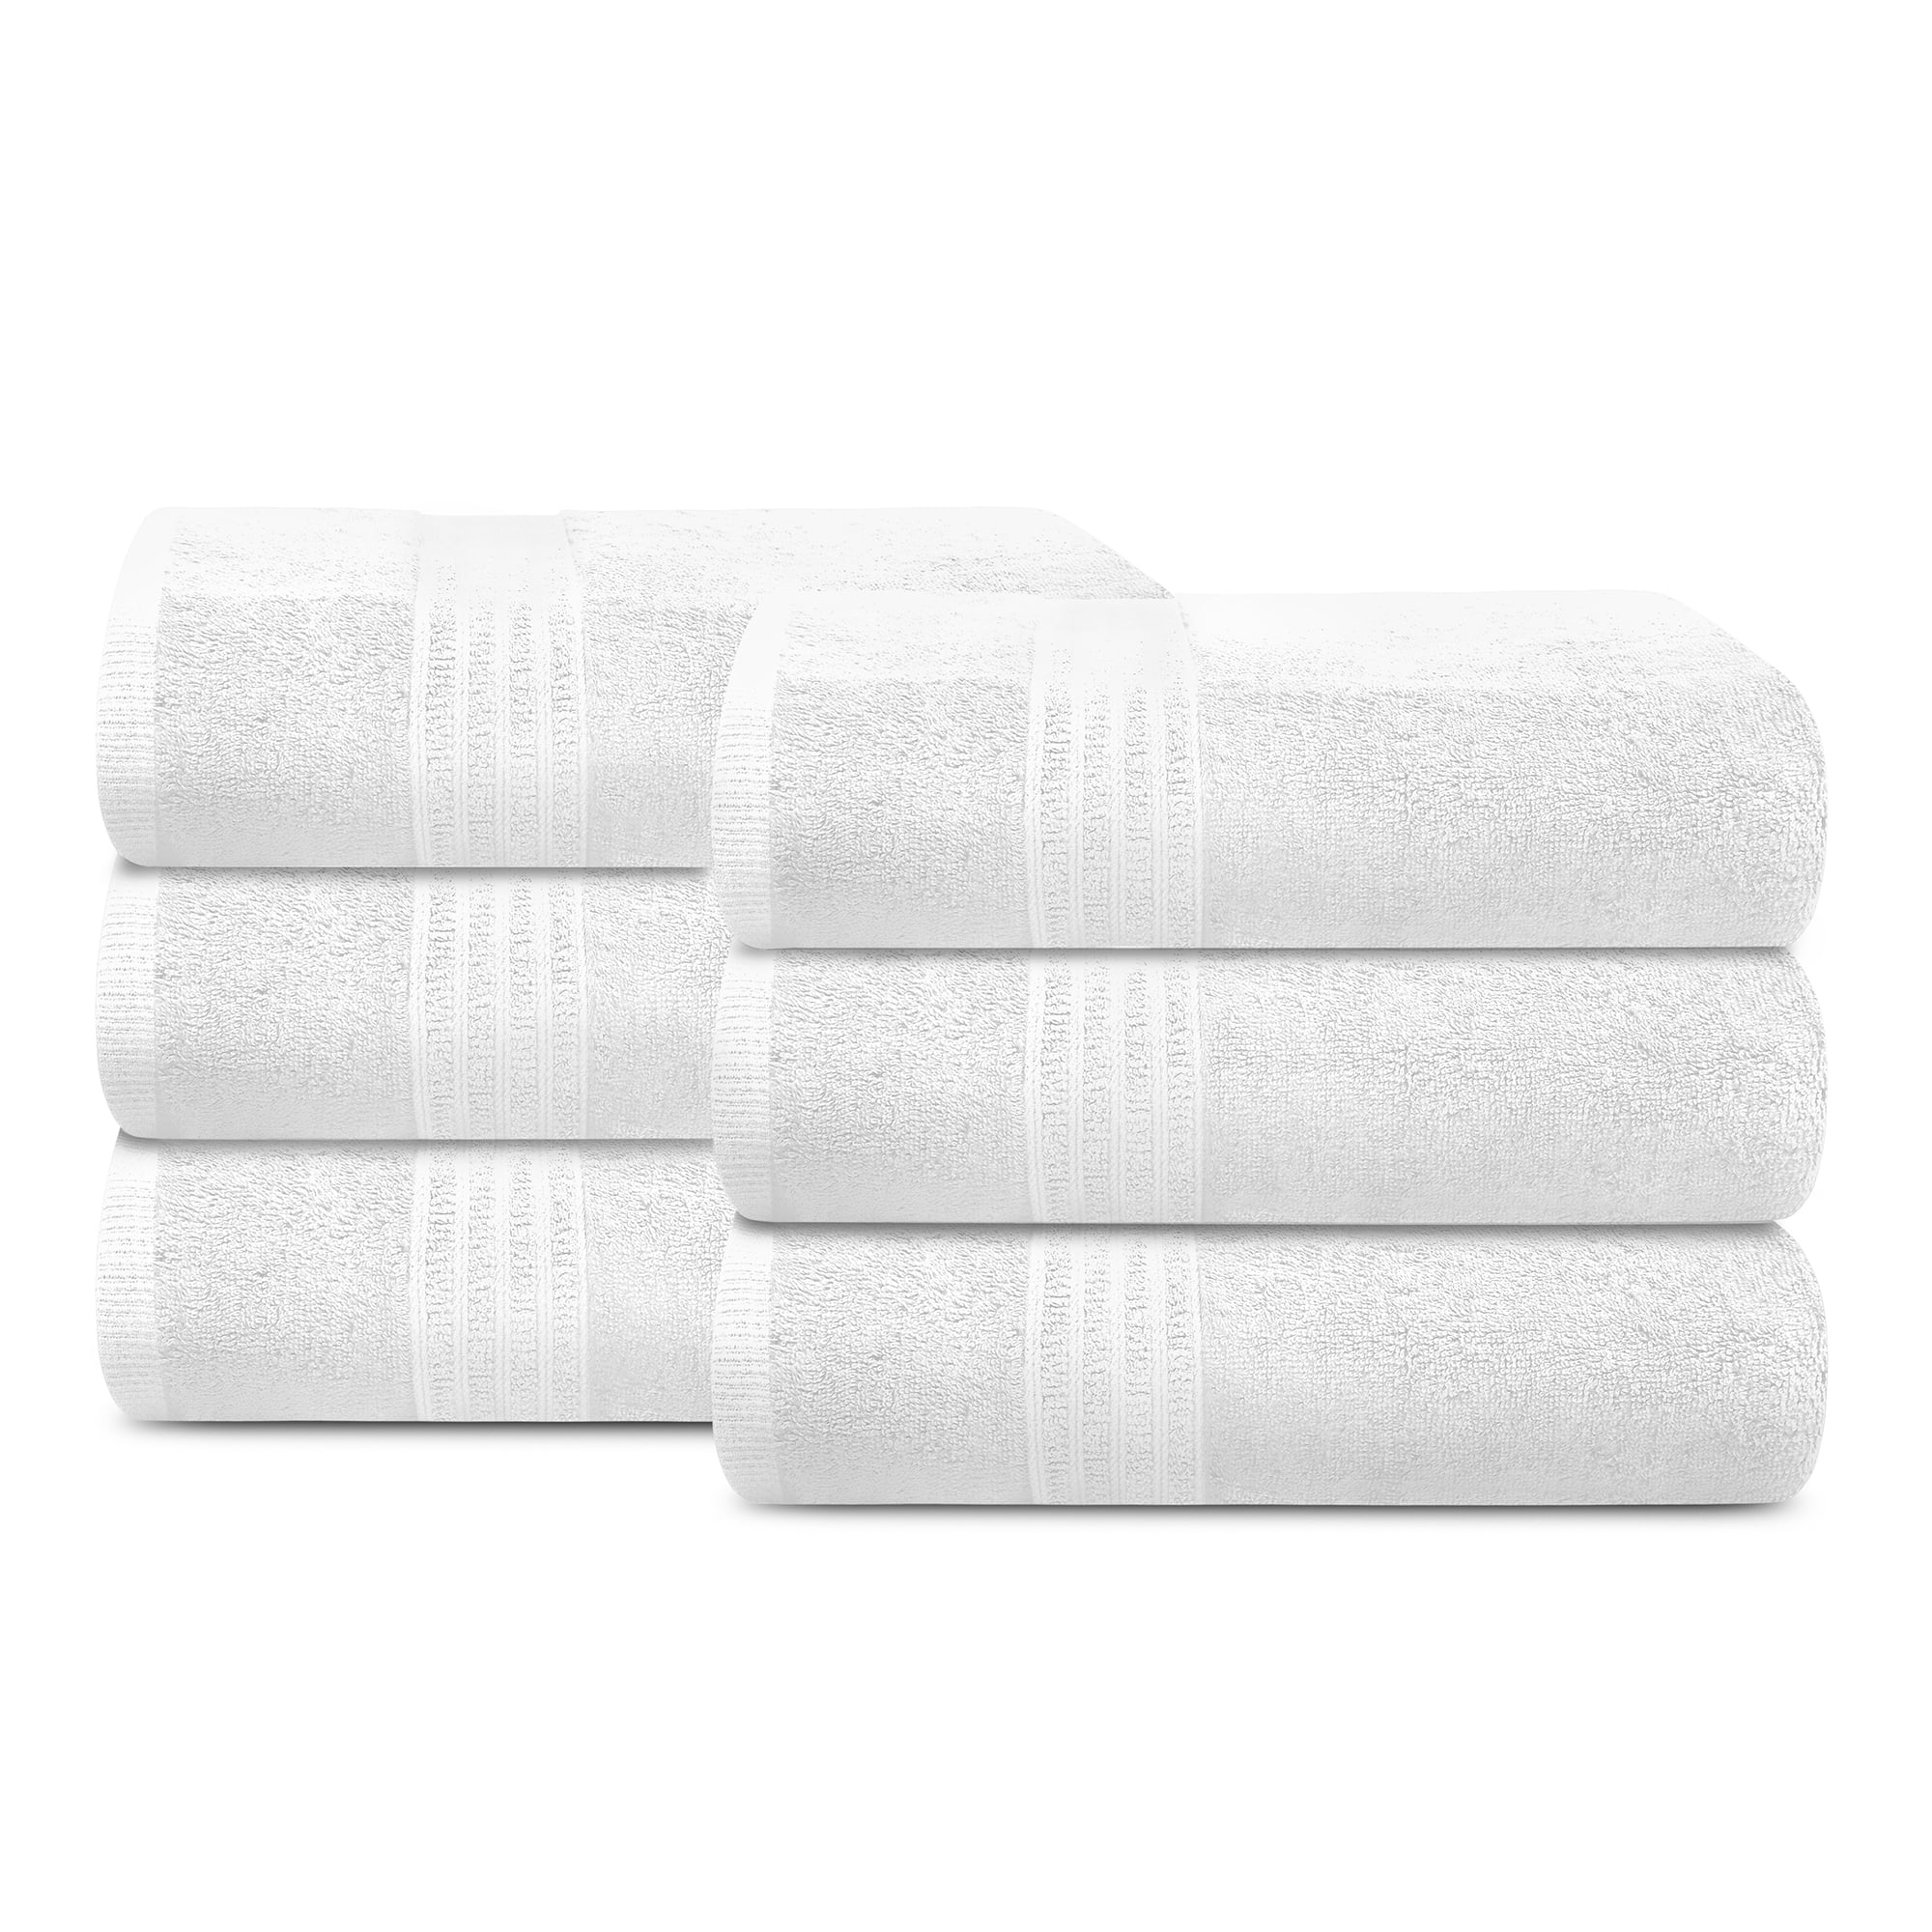 Details about   2 Pck Soft 100%Cotton Extra Large Bath Towel Oversized Bath Sheet Plum 35" x 70" 